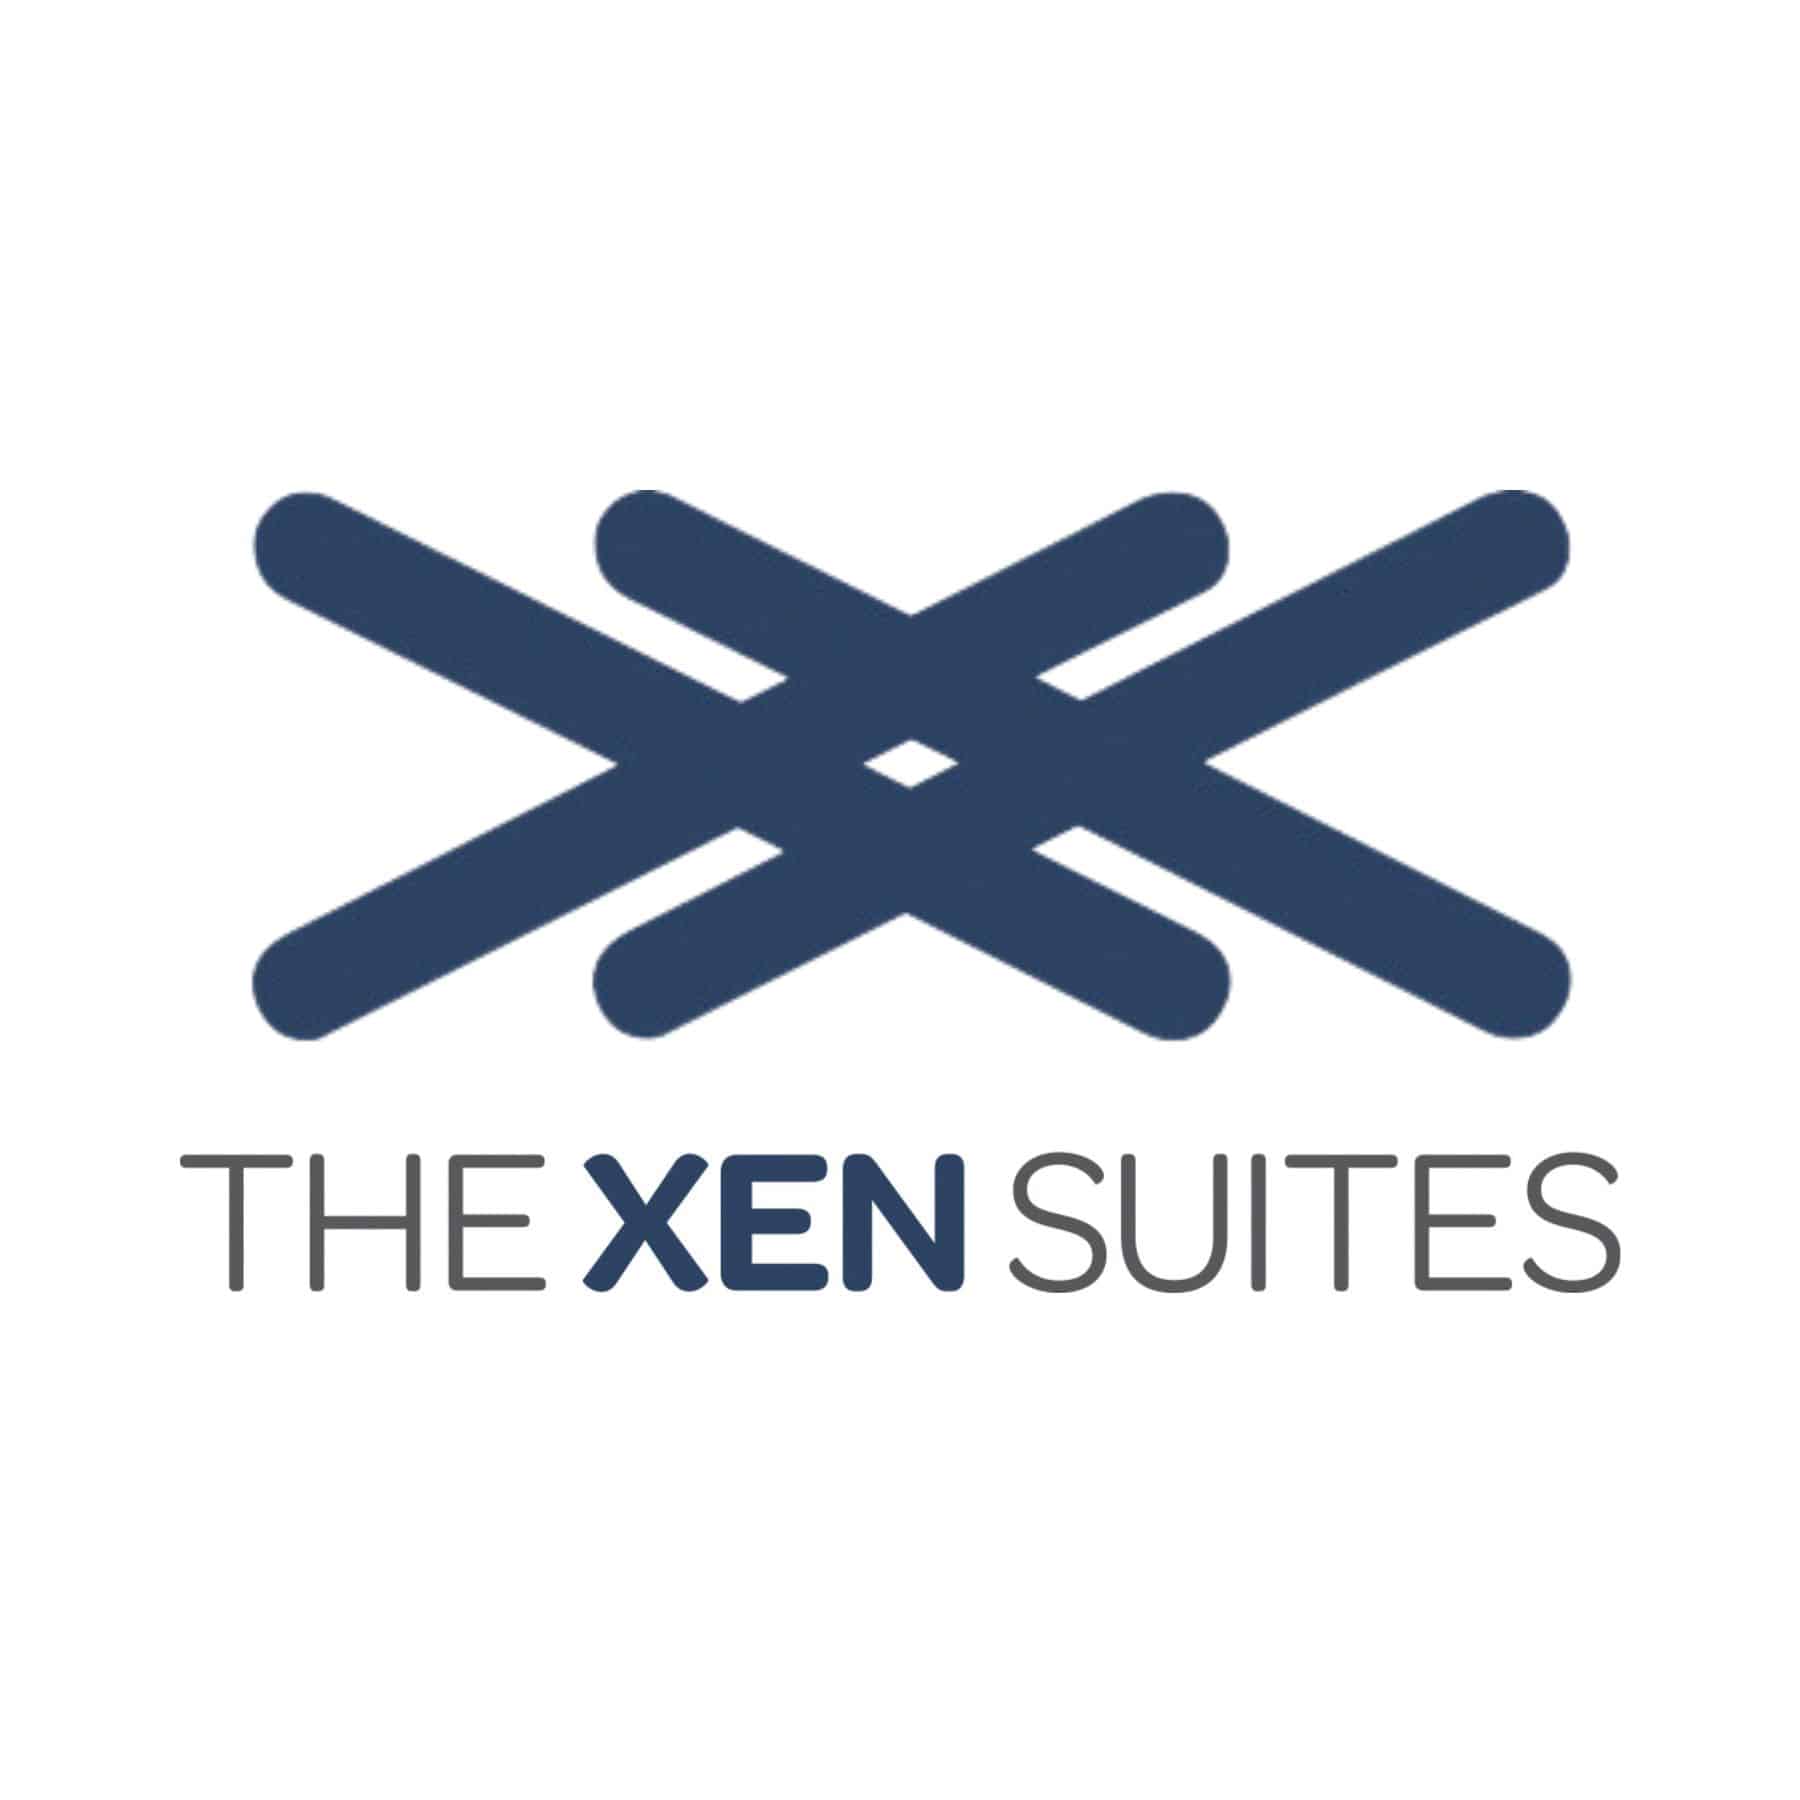 The Xen Suites